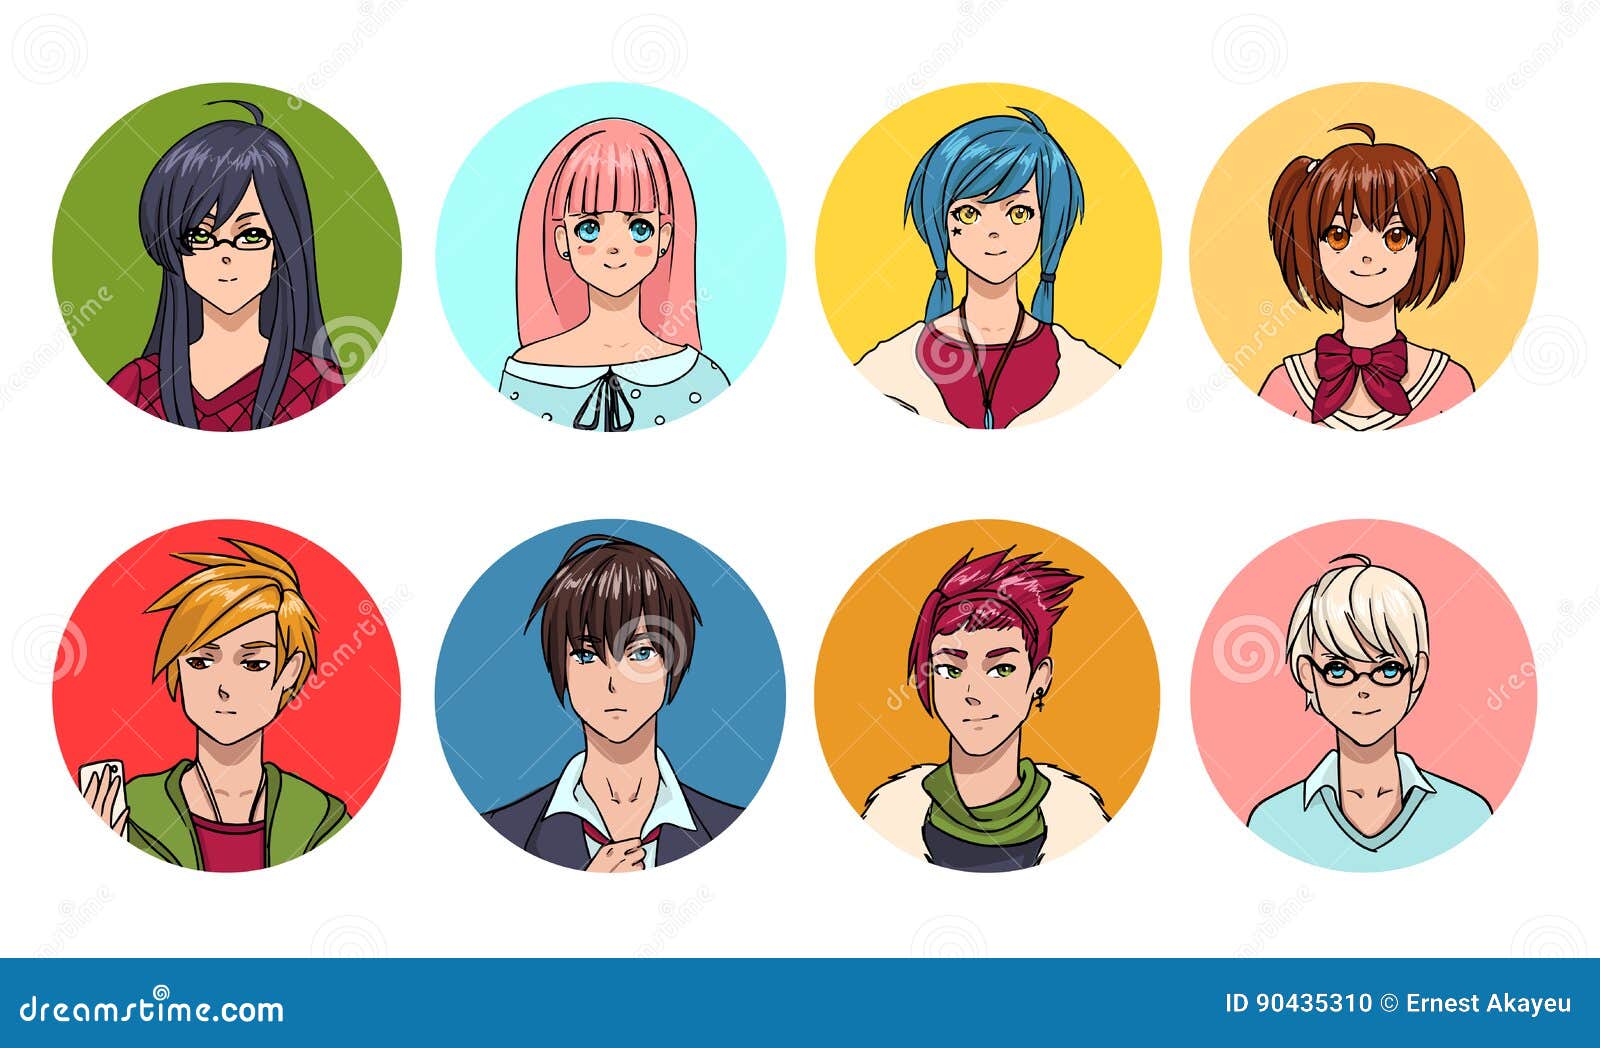 Avatar Anime Boy and Girl:
Bạn sẽ được thỏa sức sáng tạo với Avatar Anime Boy and Girl. Tạo ra nhân vật của riêng bạn bằng cách tùy chỉnh chi tiết, từ mắt đến trang phục. Với sự lựa chọn của cả nam và nữ nhân vật, bạn có thể tạo ra những hình ảnh độc đáo và phong cách.